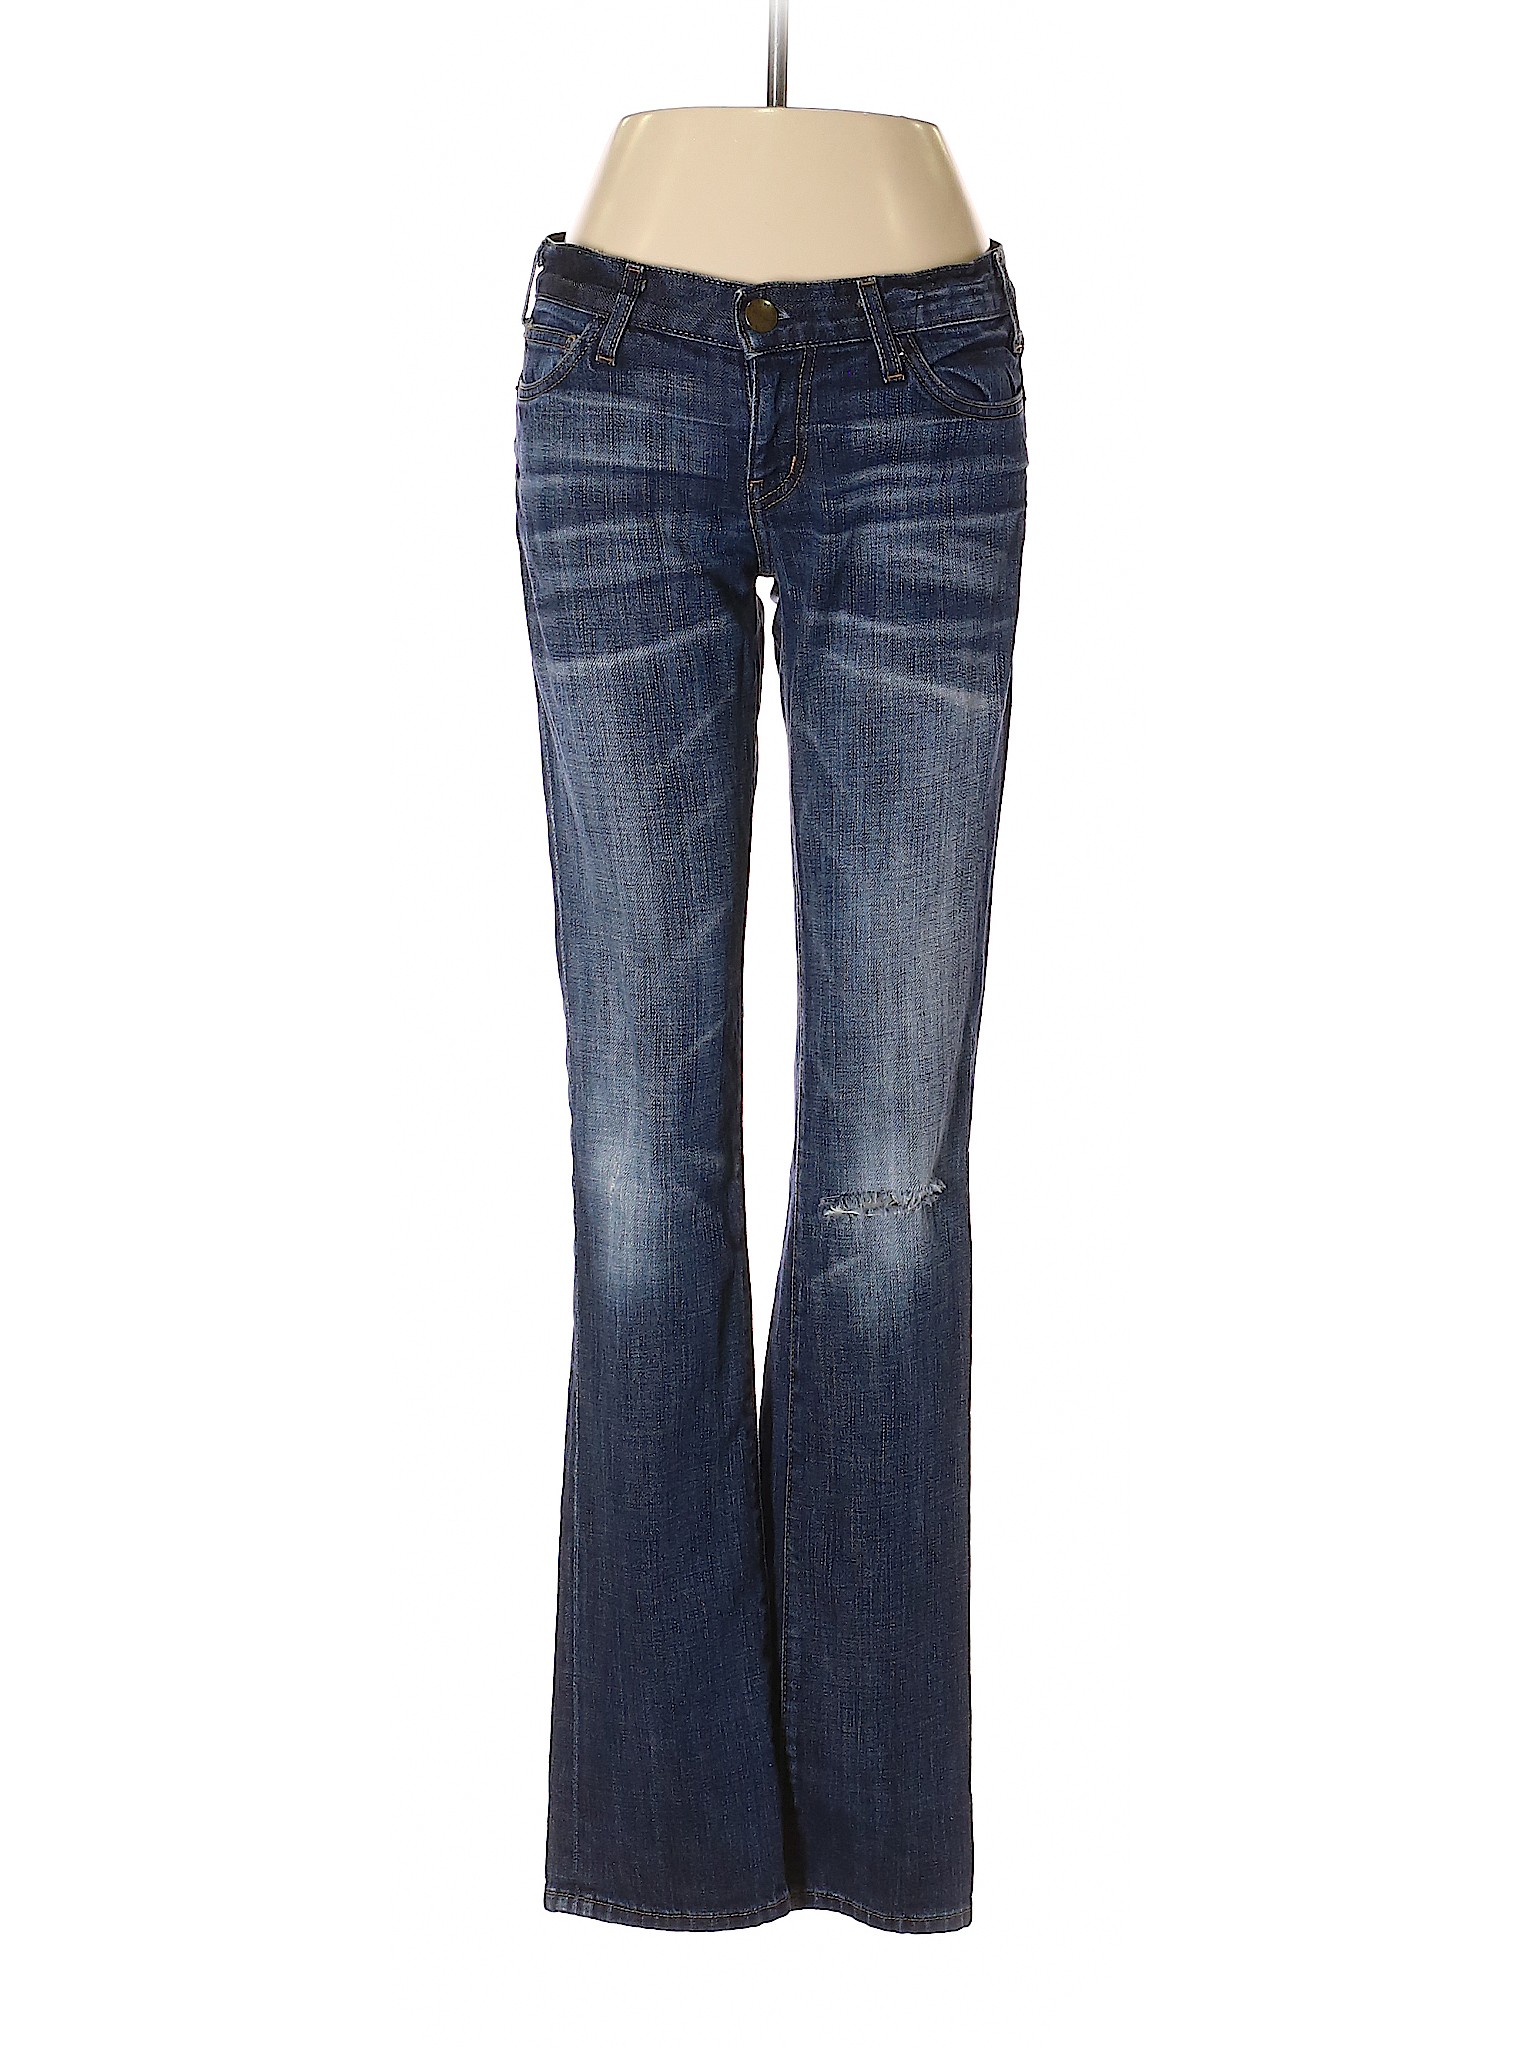 Current/Elliott Women Blue Jeans 26W | eBay